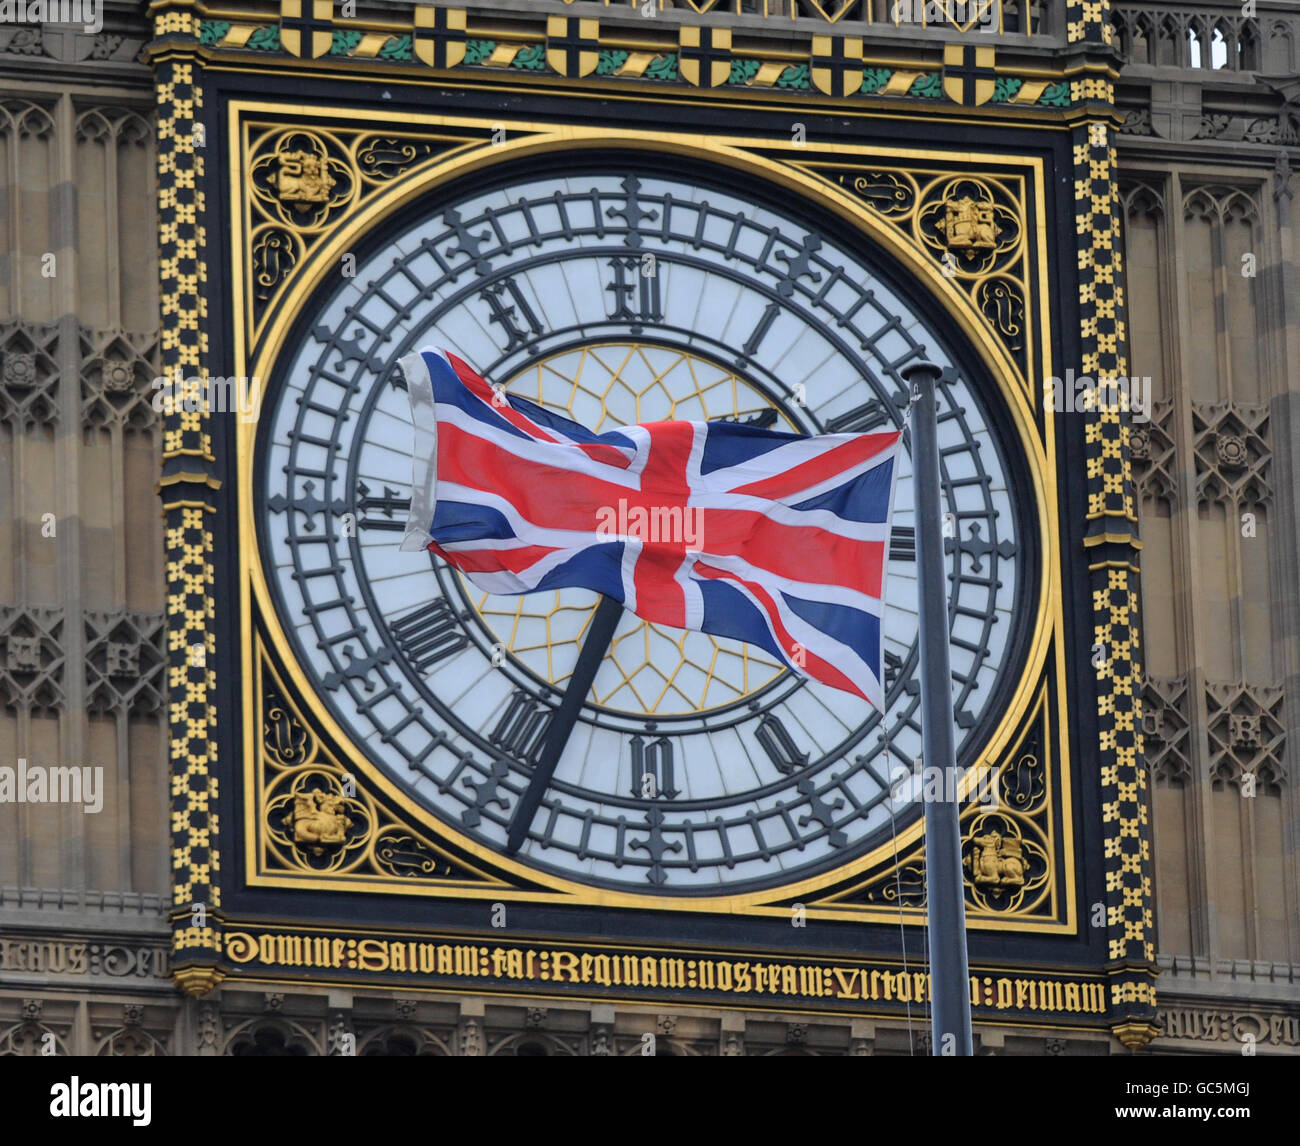 La bandiera dell'Unione vola oggi a Westminster il primo giorno del nuovo parlamento, dopo che la Regina ha ufficialmente aperto la nuova sessione all'apertura del Parlamento di quest'anno. Foto Stock